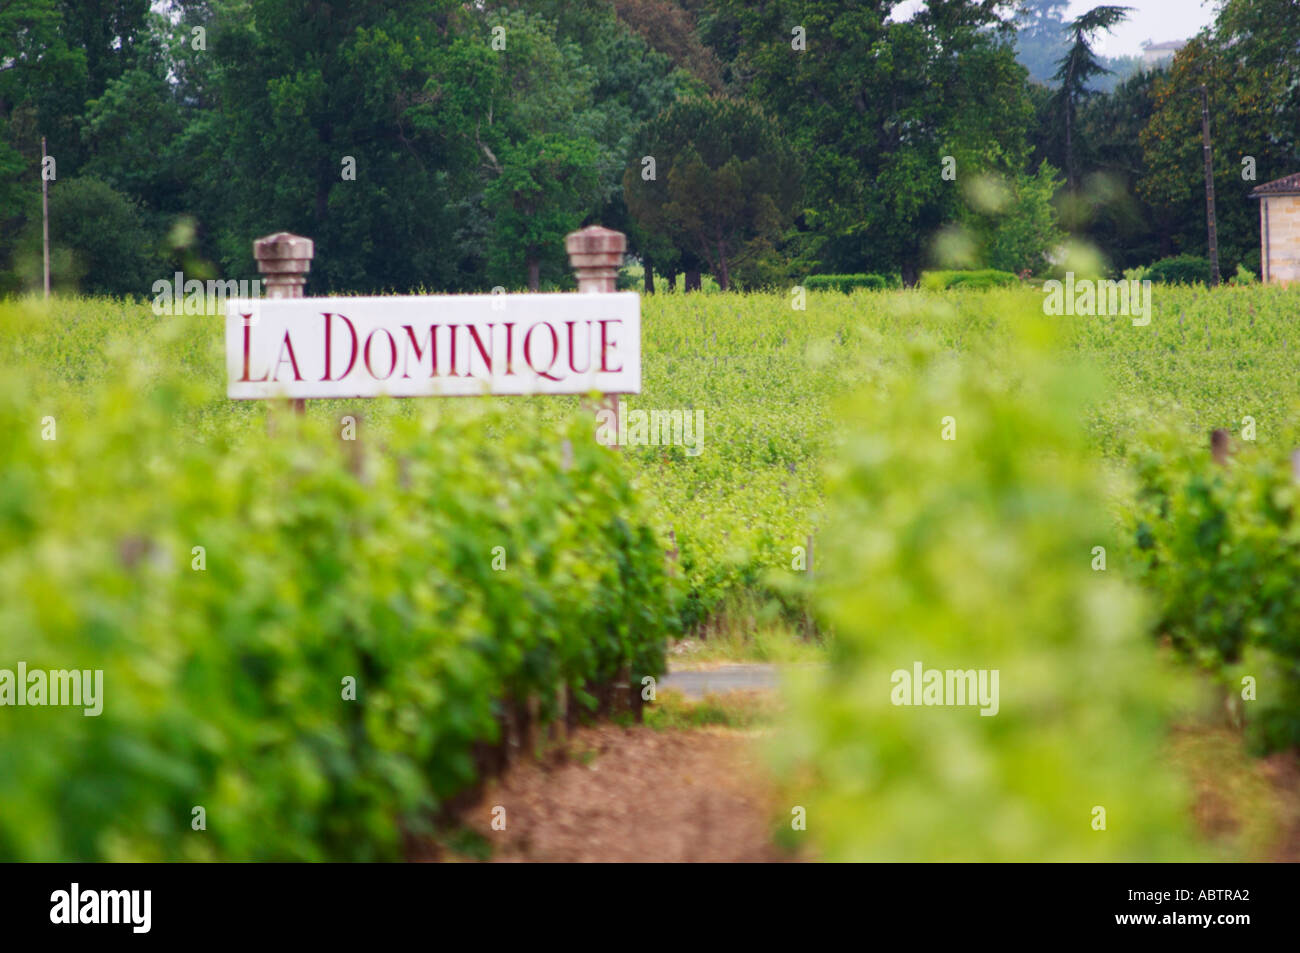 Un signe dans la vigne dit château La Dominique Saint Emilion Bordeaux Gironde Aquitaine France Banque D'Images